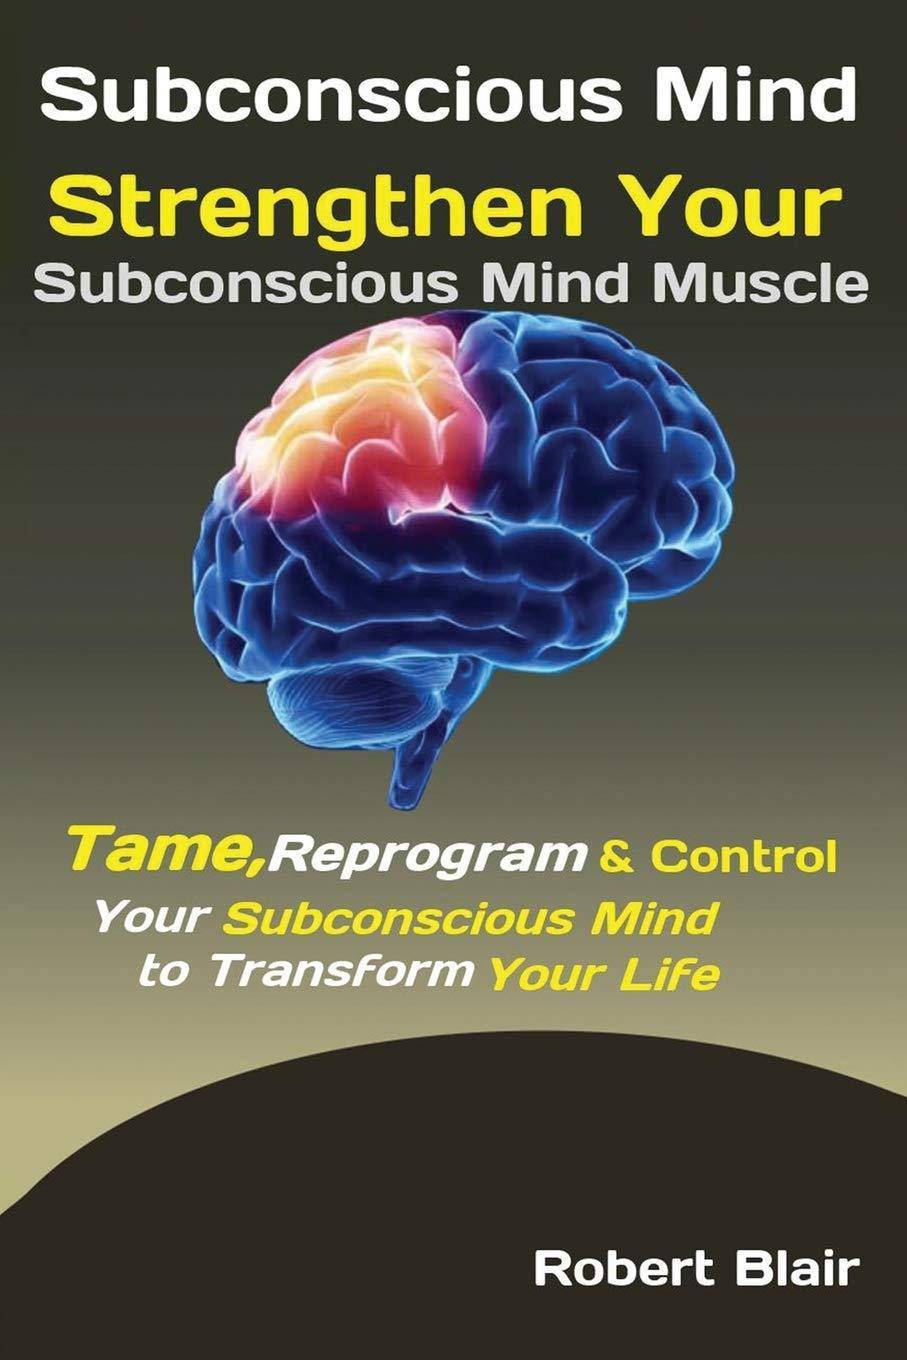 Subconscious Mind - SureShot Books Publishing LLC